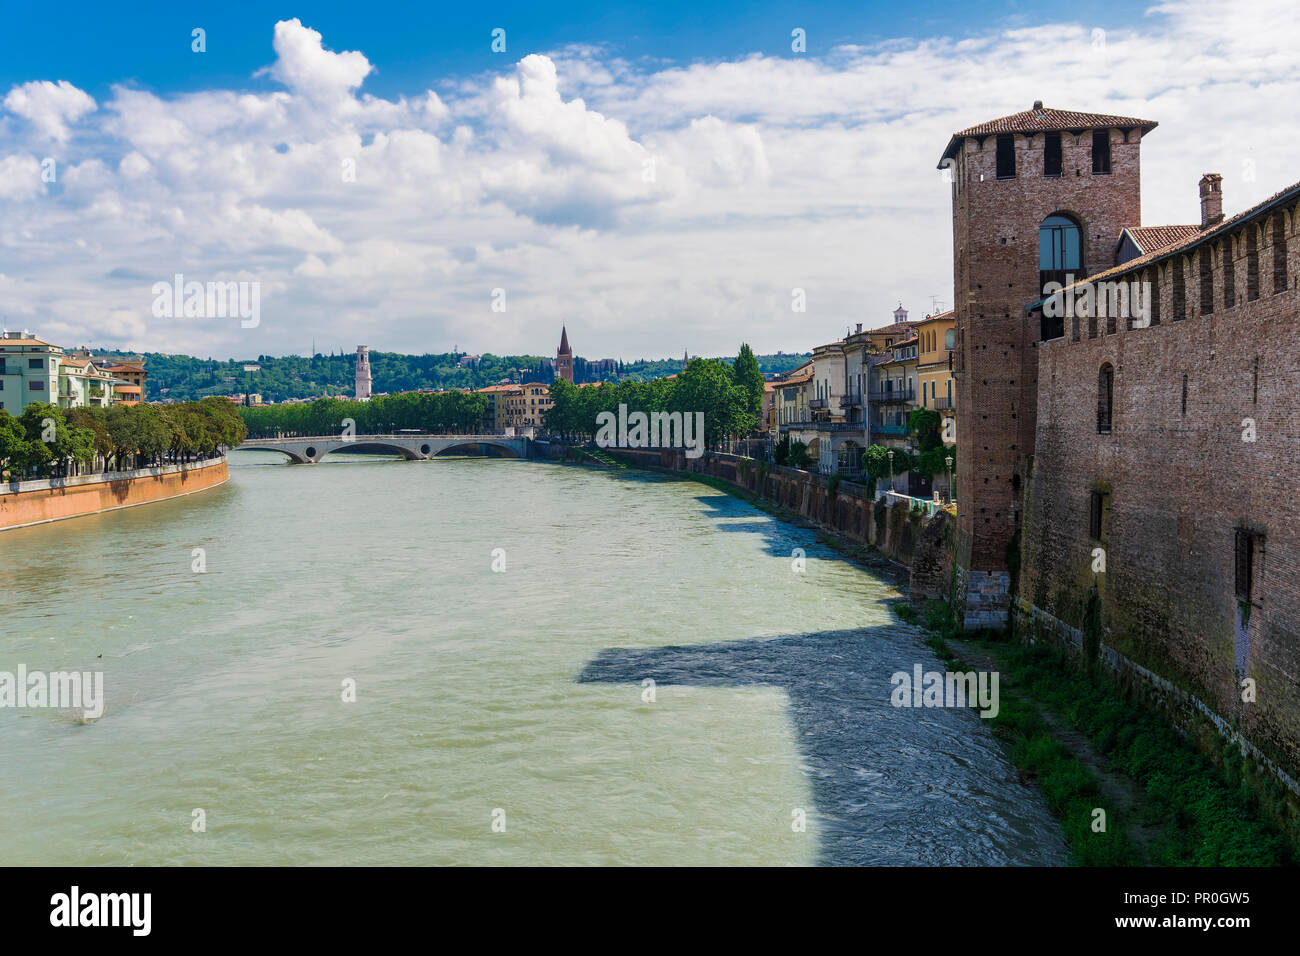 Vue sur la rivière avec un pont et château Castelvecchio, un Moyen Âge château en brique rouge sur la rive droite de l'Adige, Vérone, Vénétie, Italie, Europe Banque D'Images